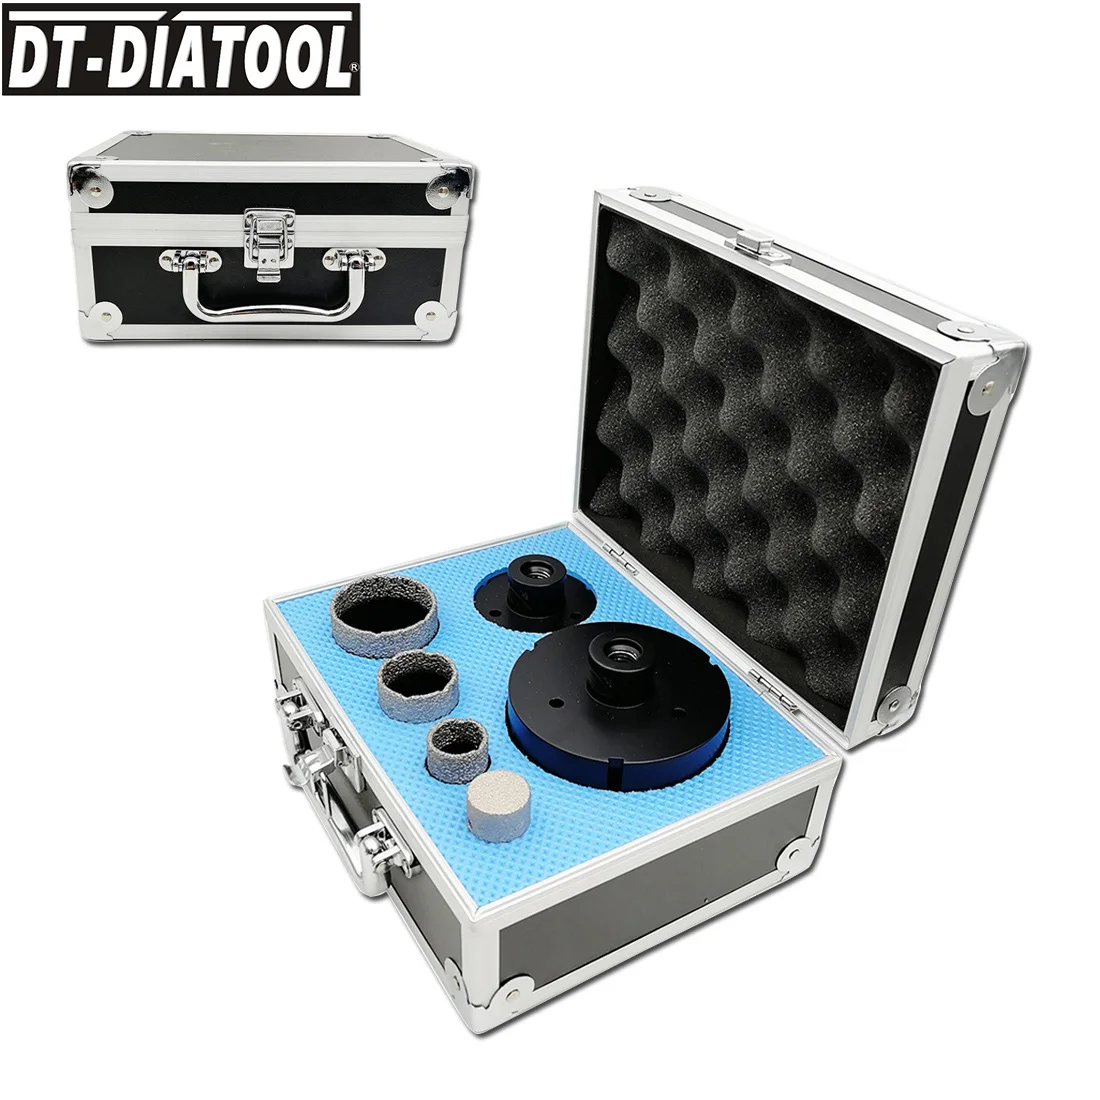 DT-DIATOOL 6pcs/kit M14 Vacuum Brazed Diamond Drill Core Bits Set Mixed Size Hole Saw & 1pc Finger Bit For Tile Granite Marble